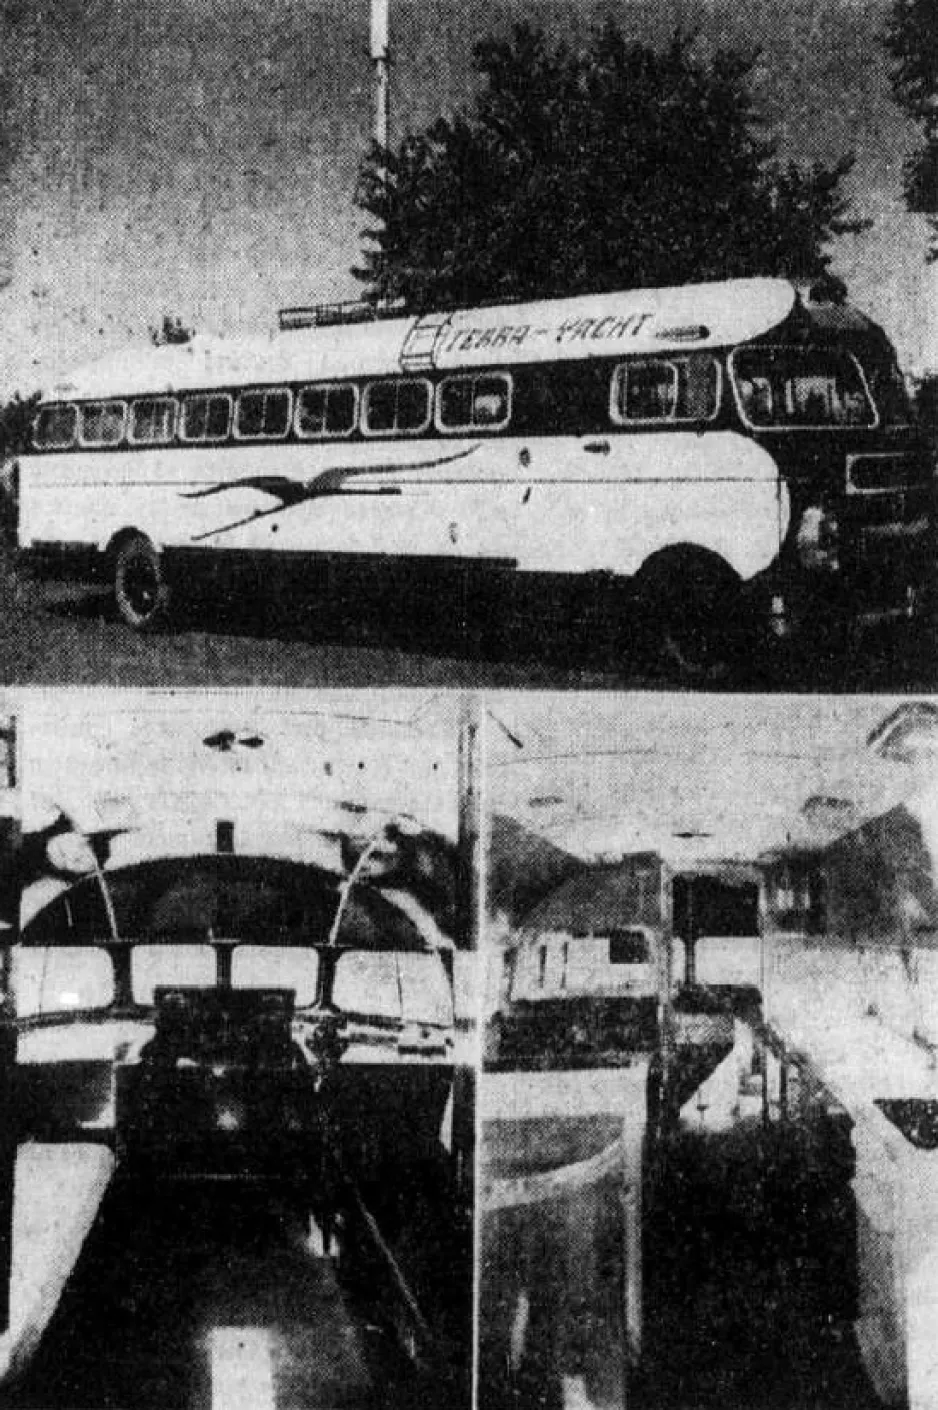 Deux autres vues du Prévost Terra-Yacht, Sainte-Claire de Dorchester, Québec. Anon., “Une maison roulante.” Le Soleil, 25 septembre 1948, 3.